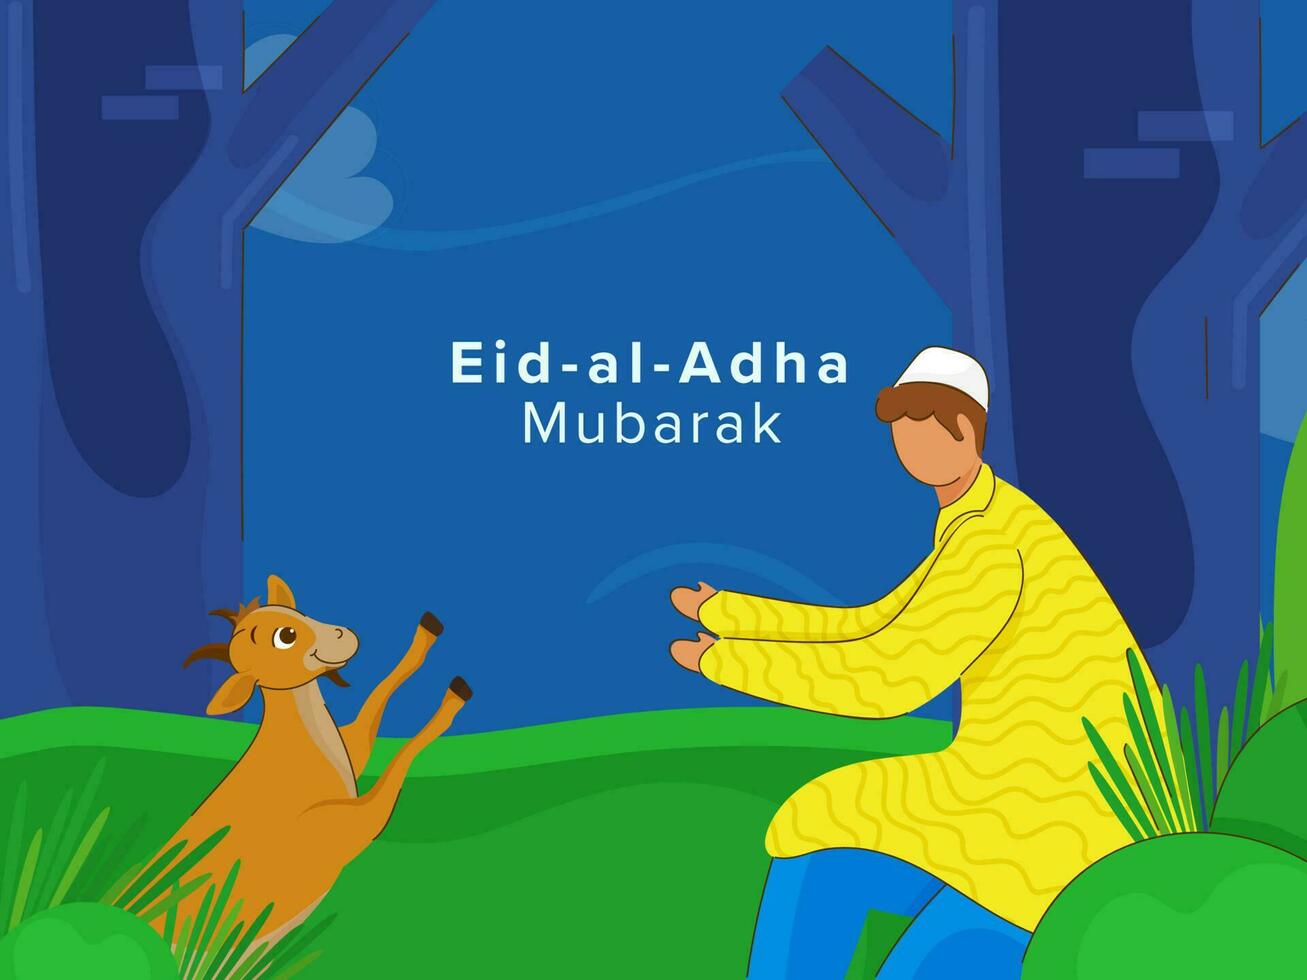 eid-al-adha mubarak poster ontwerp, gezichtsloos Islamitisch jong jongen spelen met geit Aan blauw en groen natuur achtergrond. vector